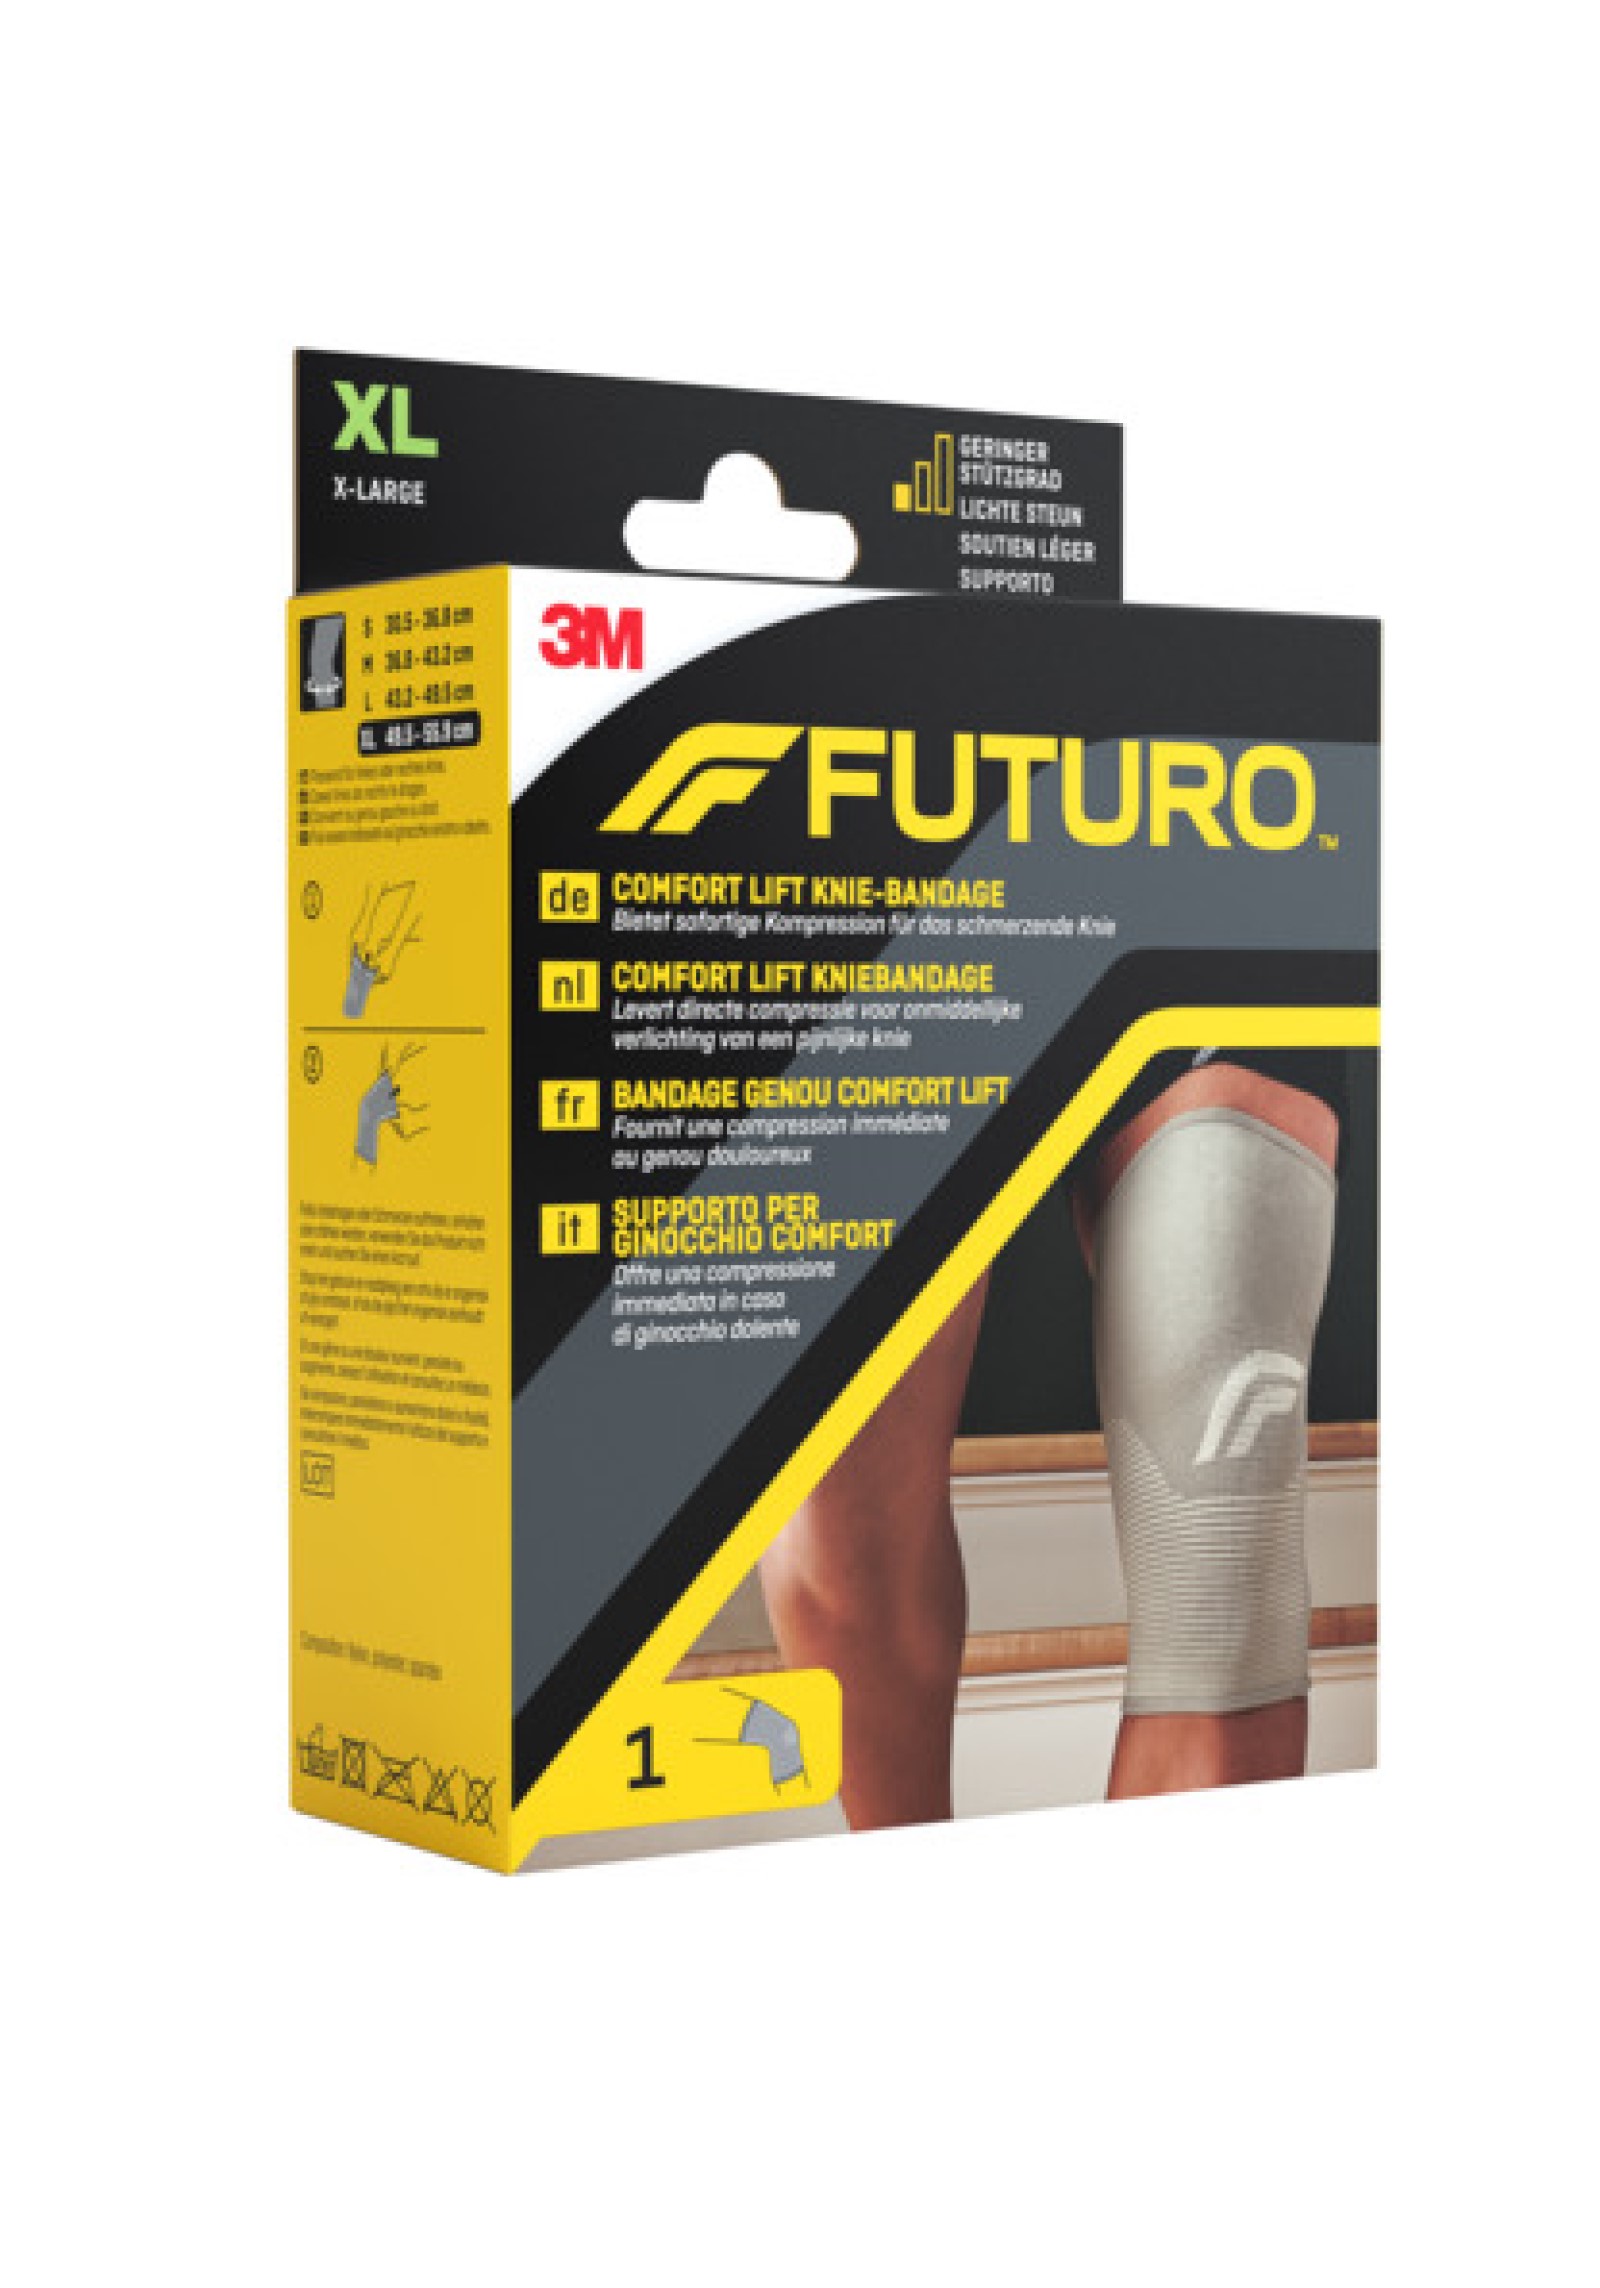 FUTURO™ Comfort Lift Knie-Bandage 76589 , XL (49.5 - 55.9 cm)